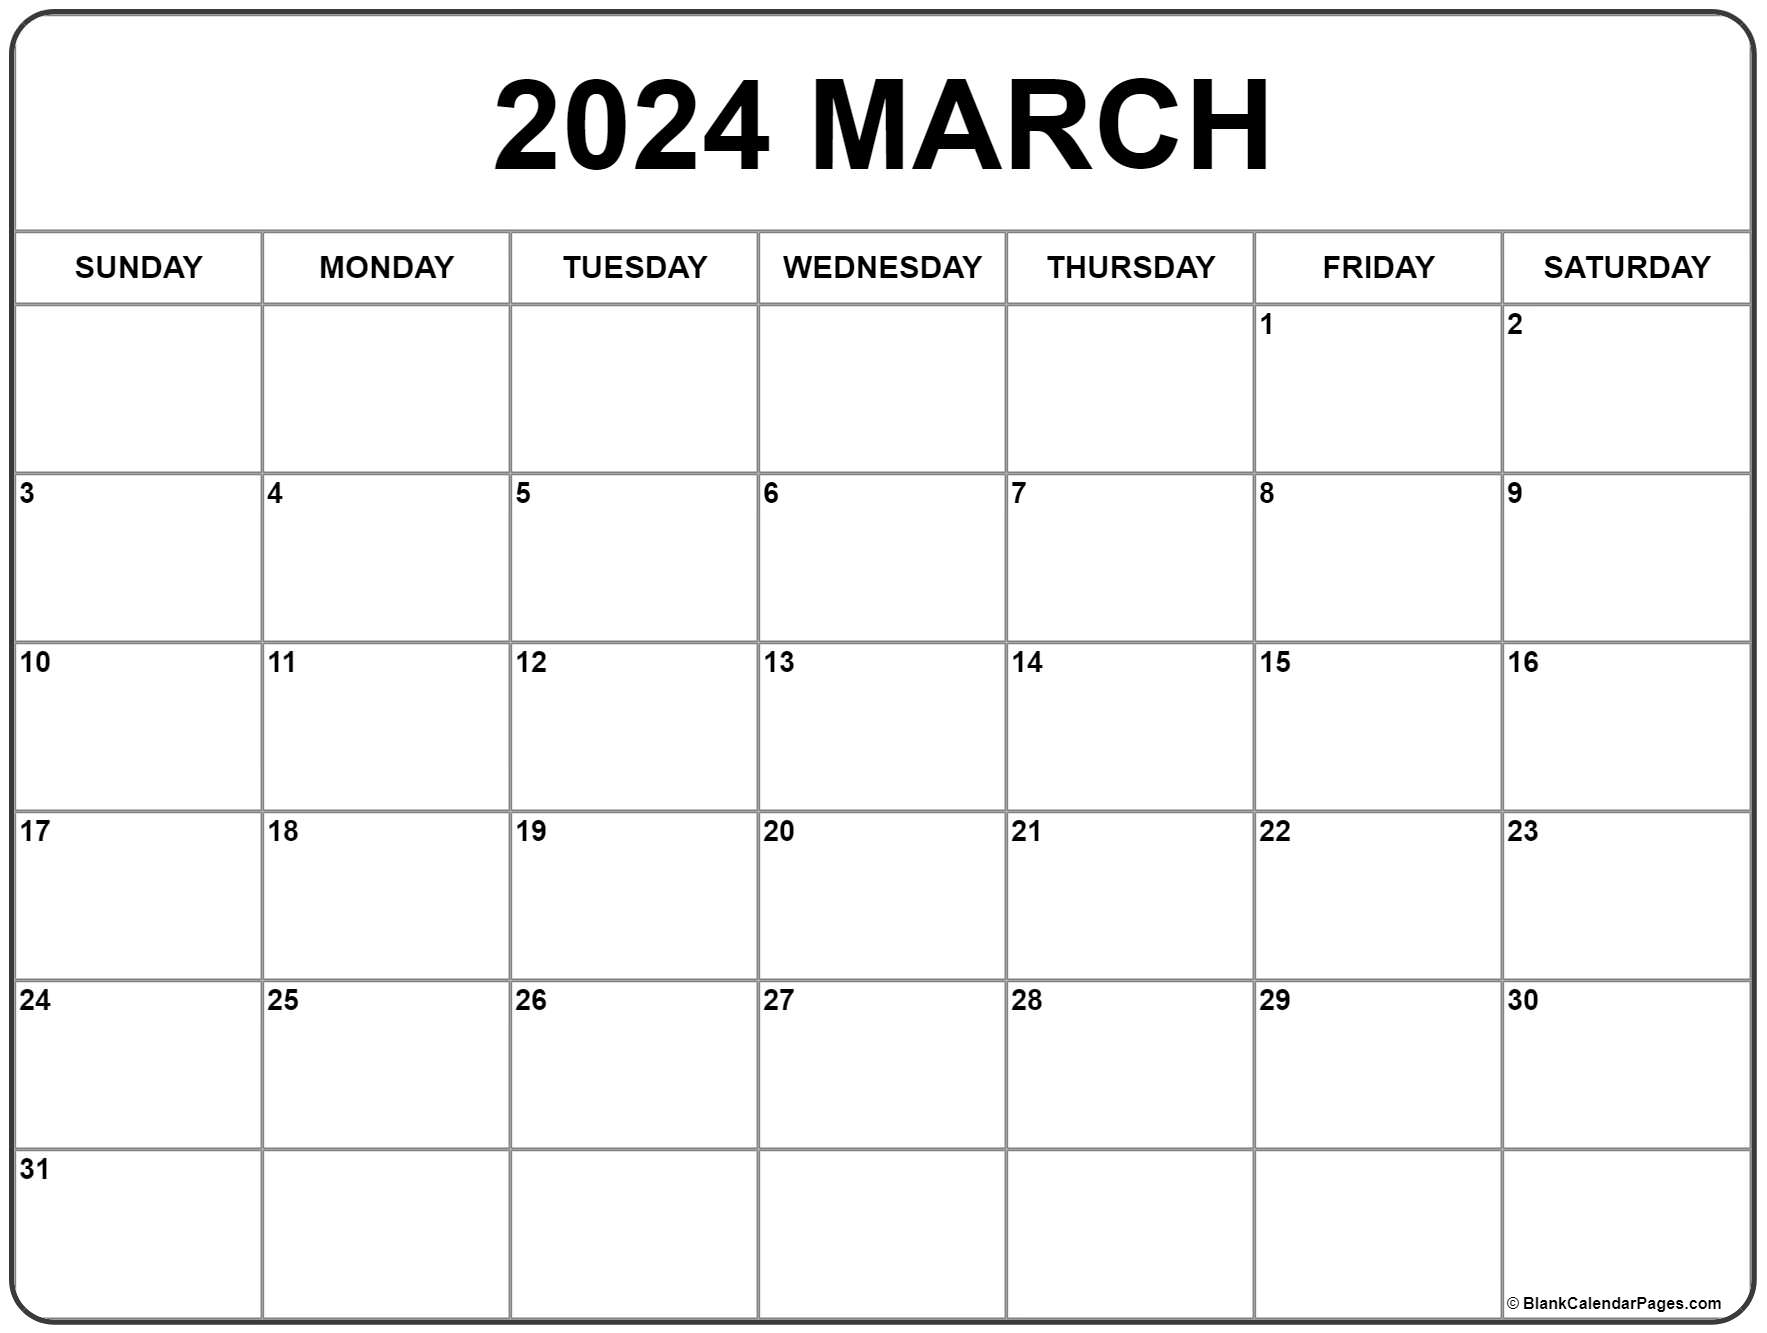 March 2021 calendar